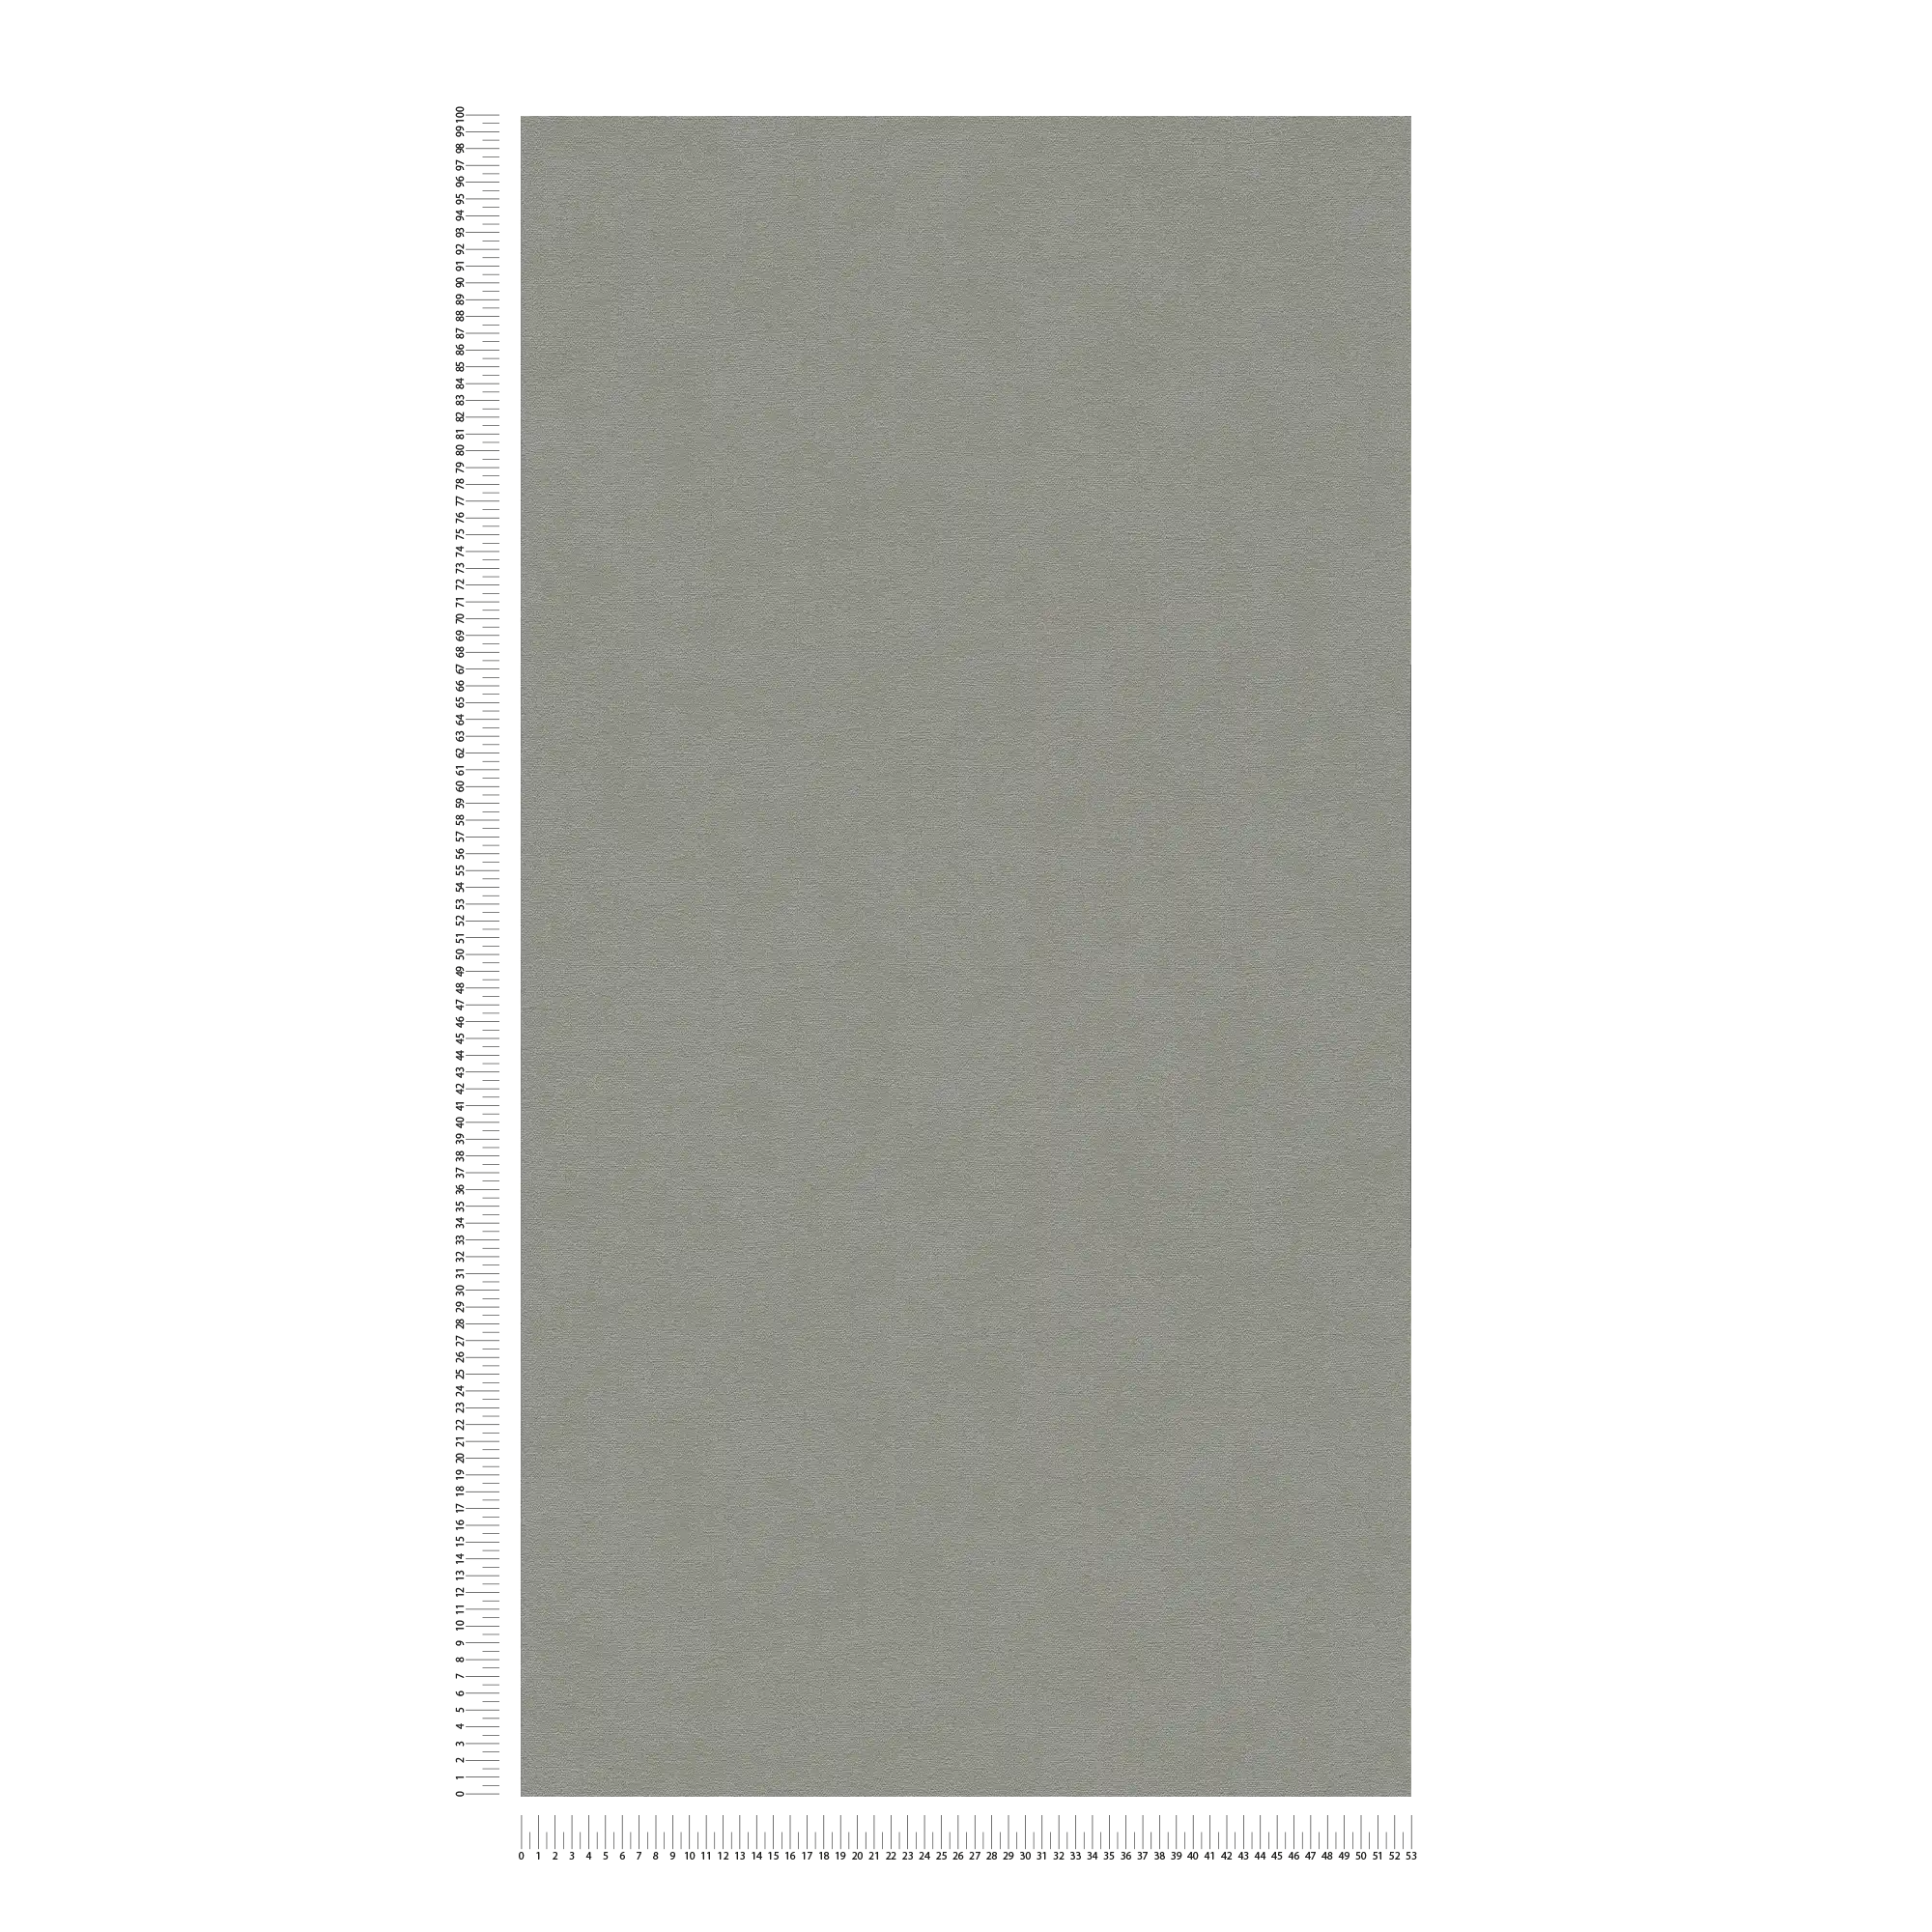             Vliesbehang eenkleurig oppervlak met fijne structuur - grijs
        